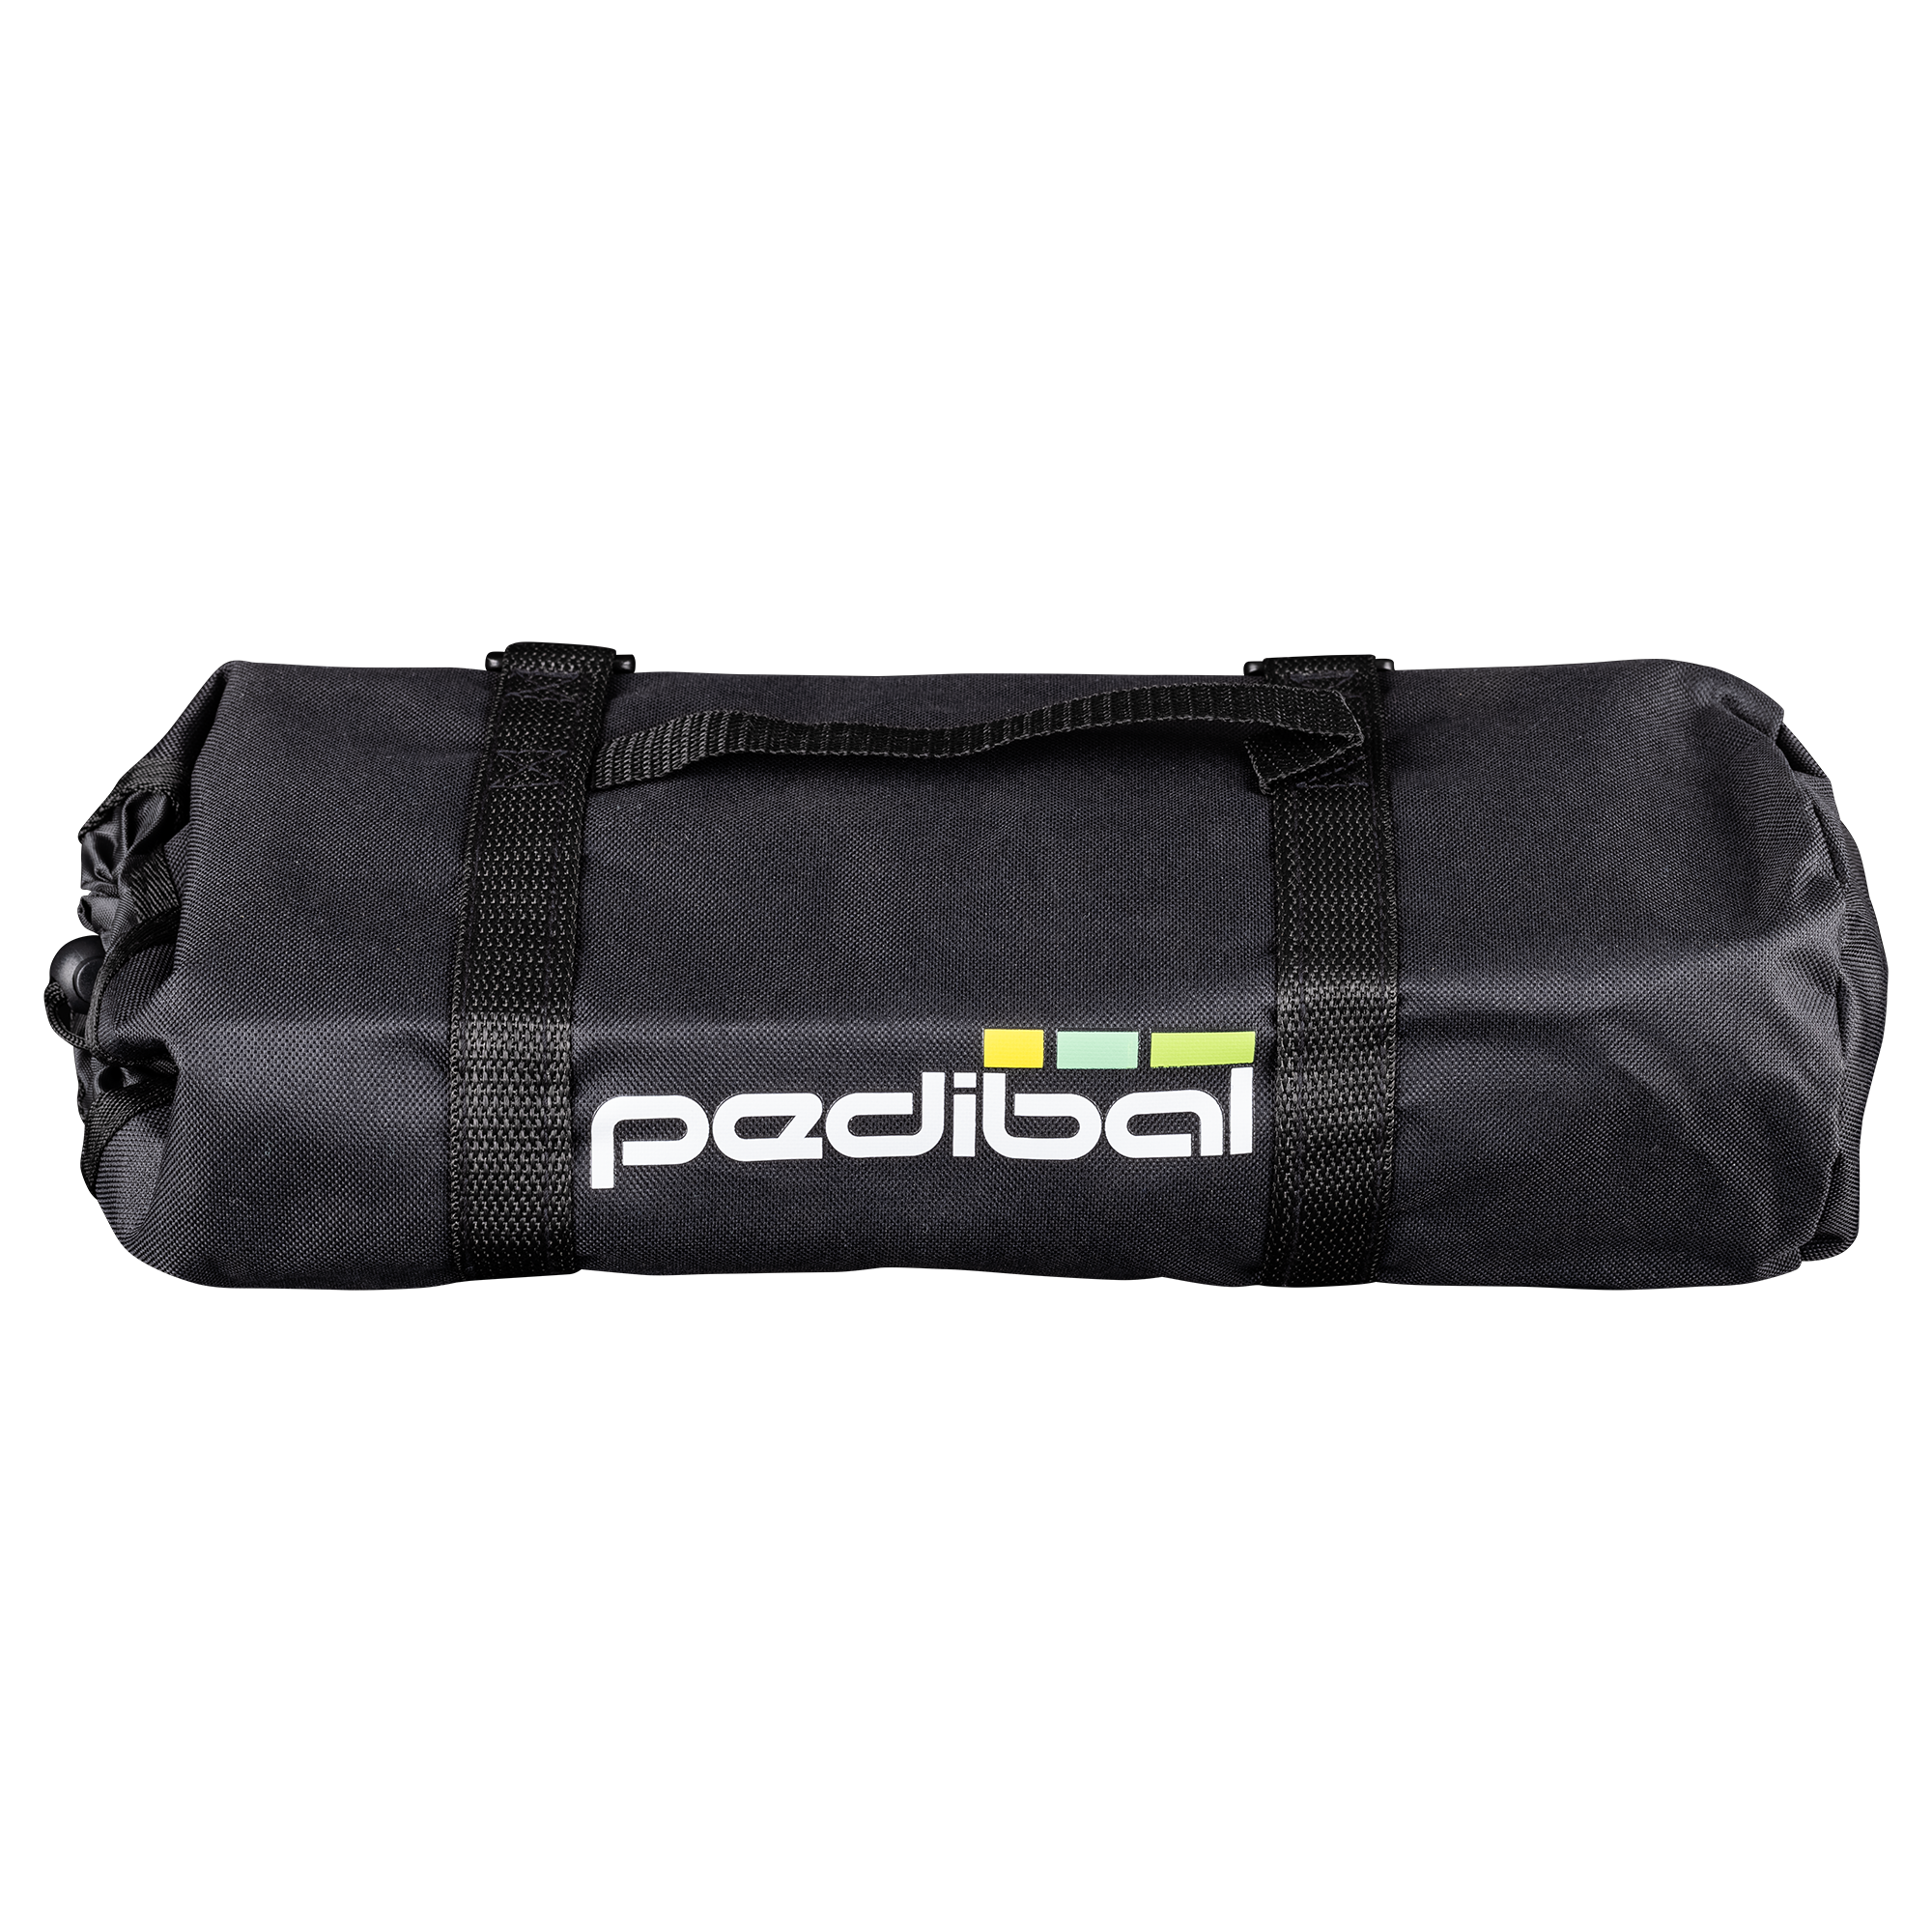 Pedibal 20" Transit Bag (inc storage bag)